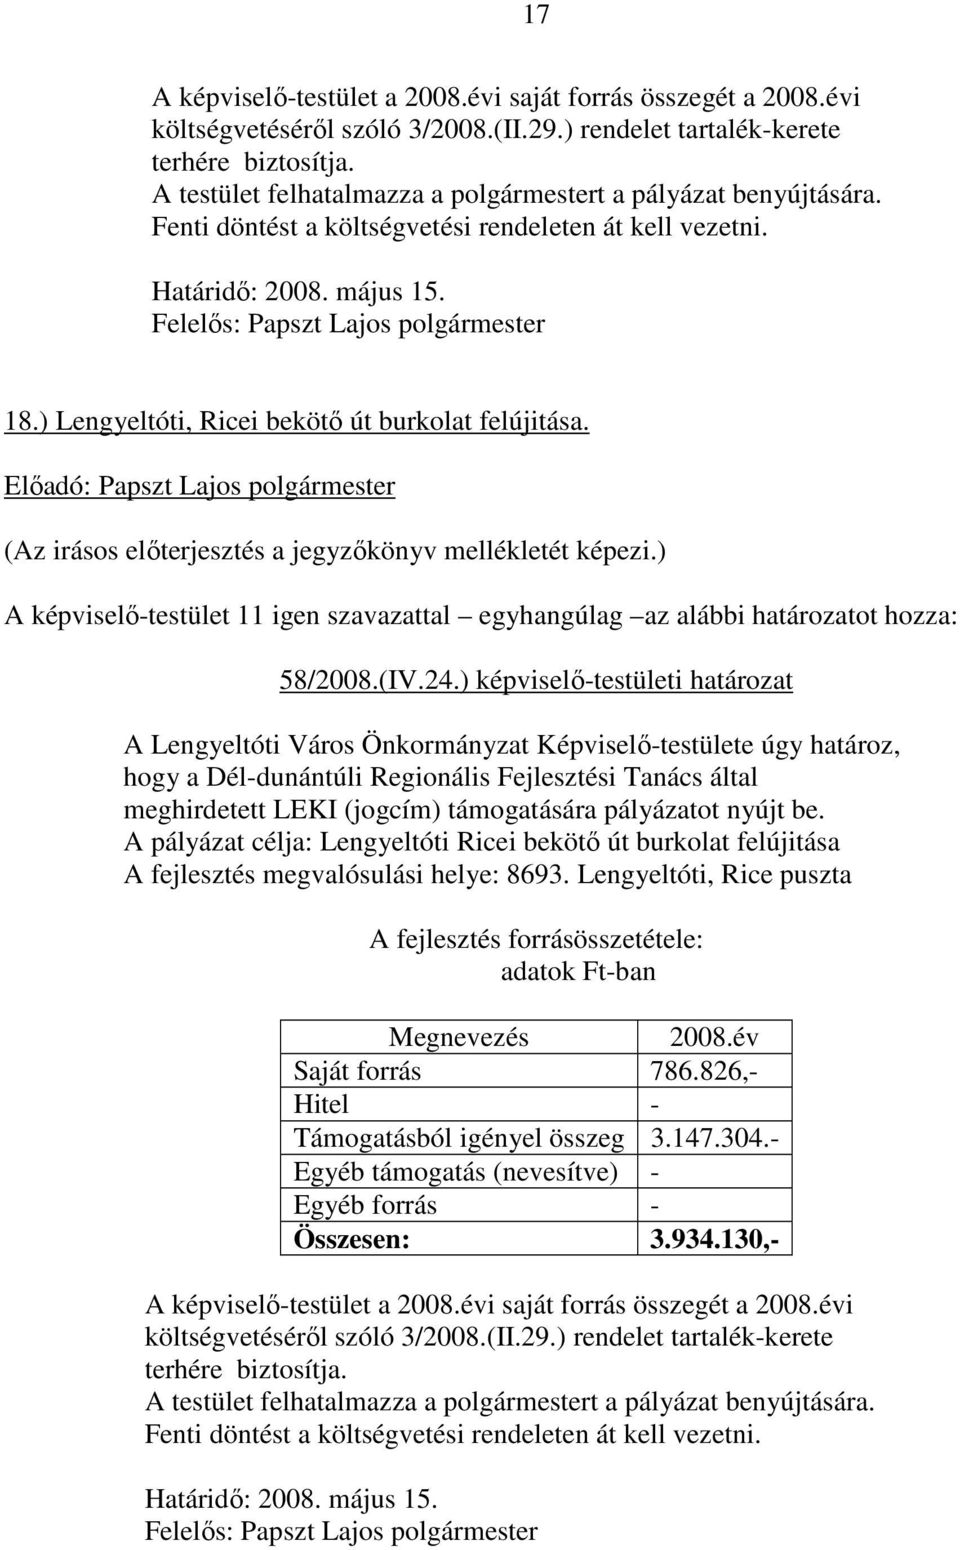 ) Lengyeltóti, Ricei bekötı út burkolat felújitása. 58/2008.(IV.24.